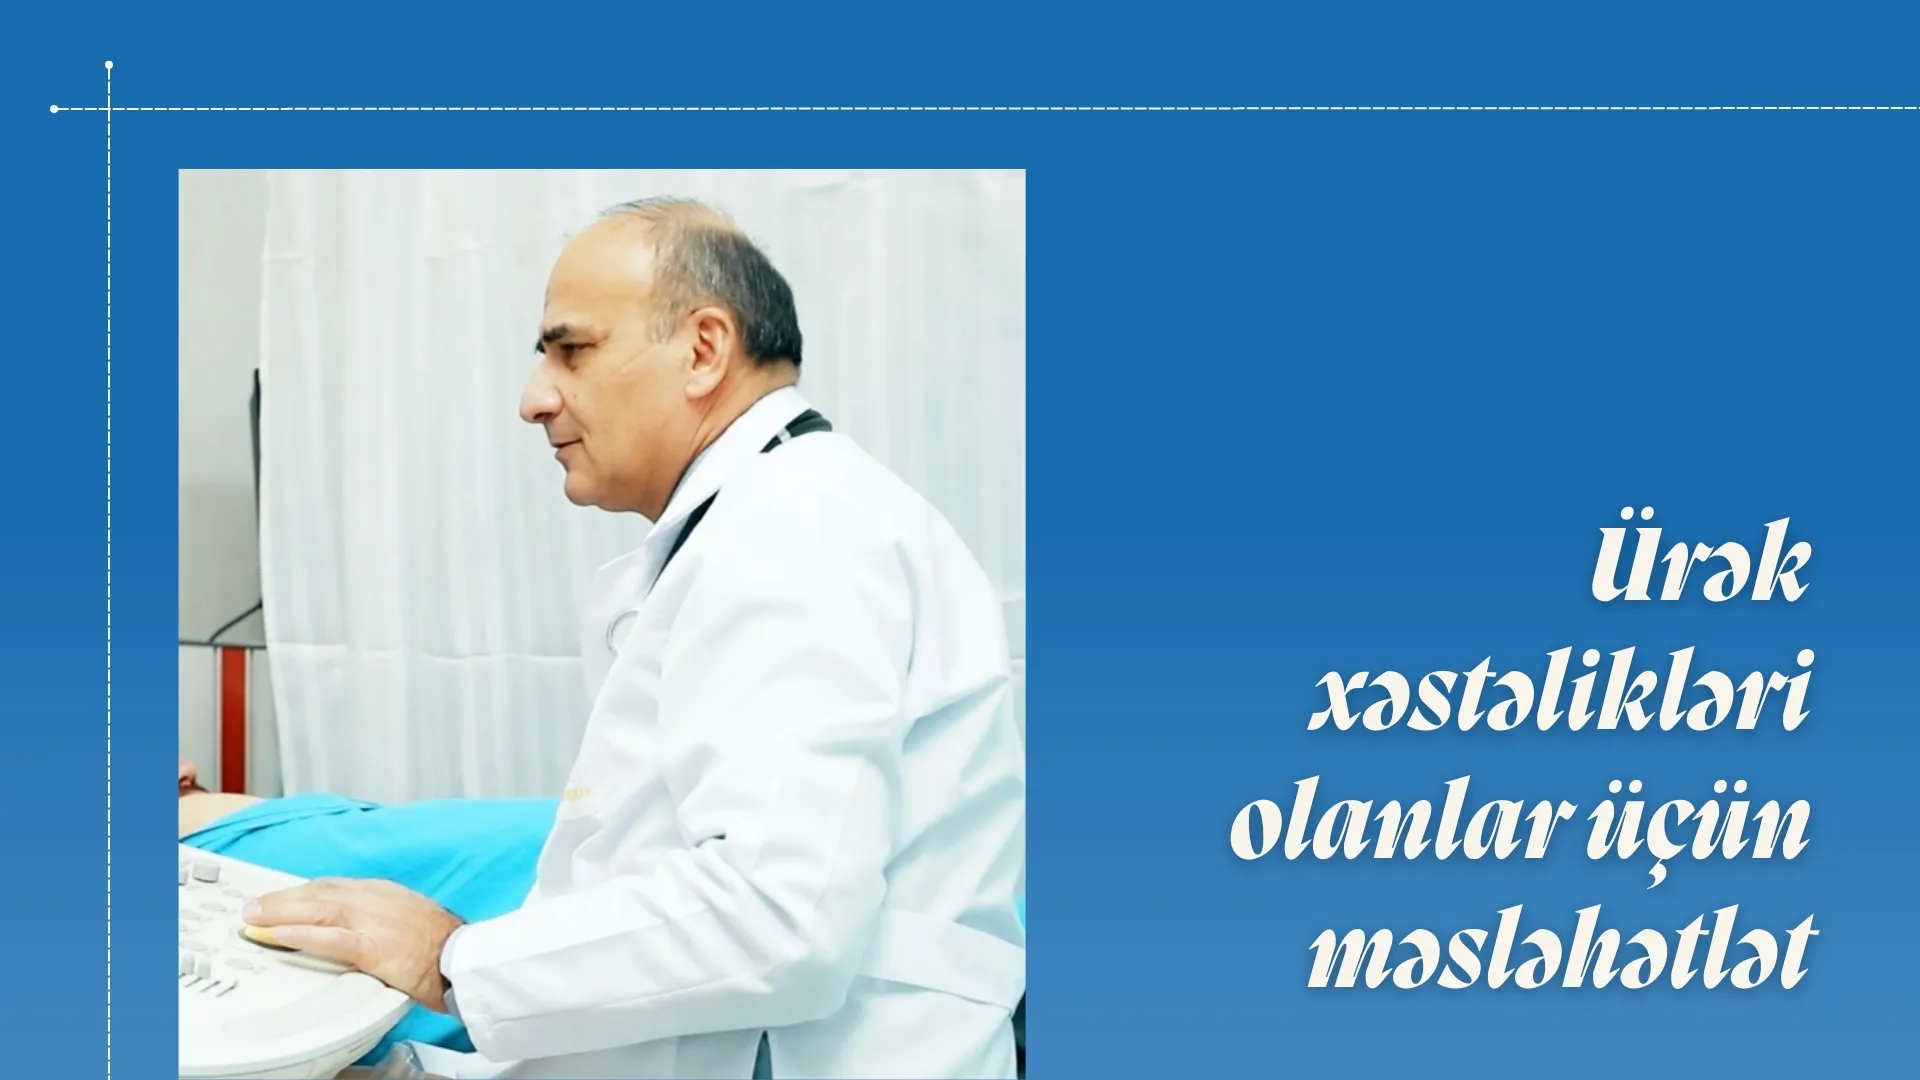 Ürək xəstəlikləri olanlar üçün məsləhətlər - Dr. Ağadadaş Rəşidov